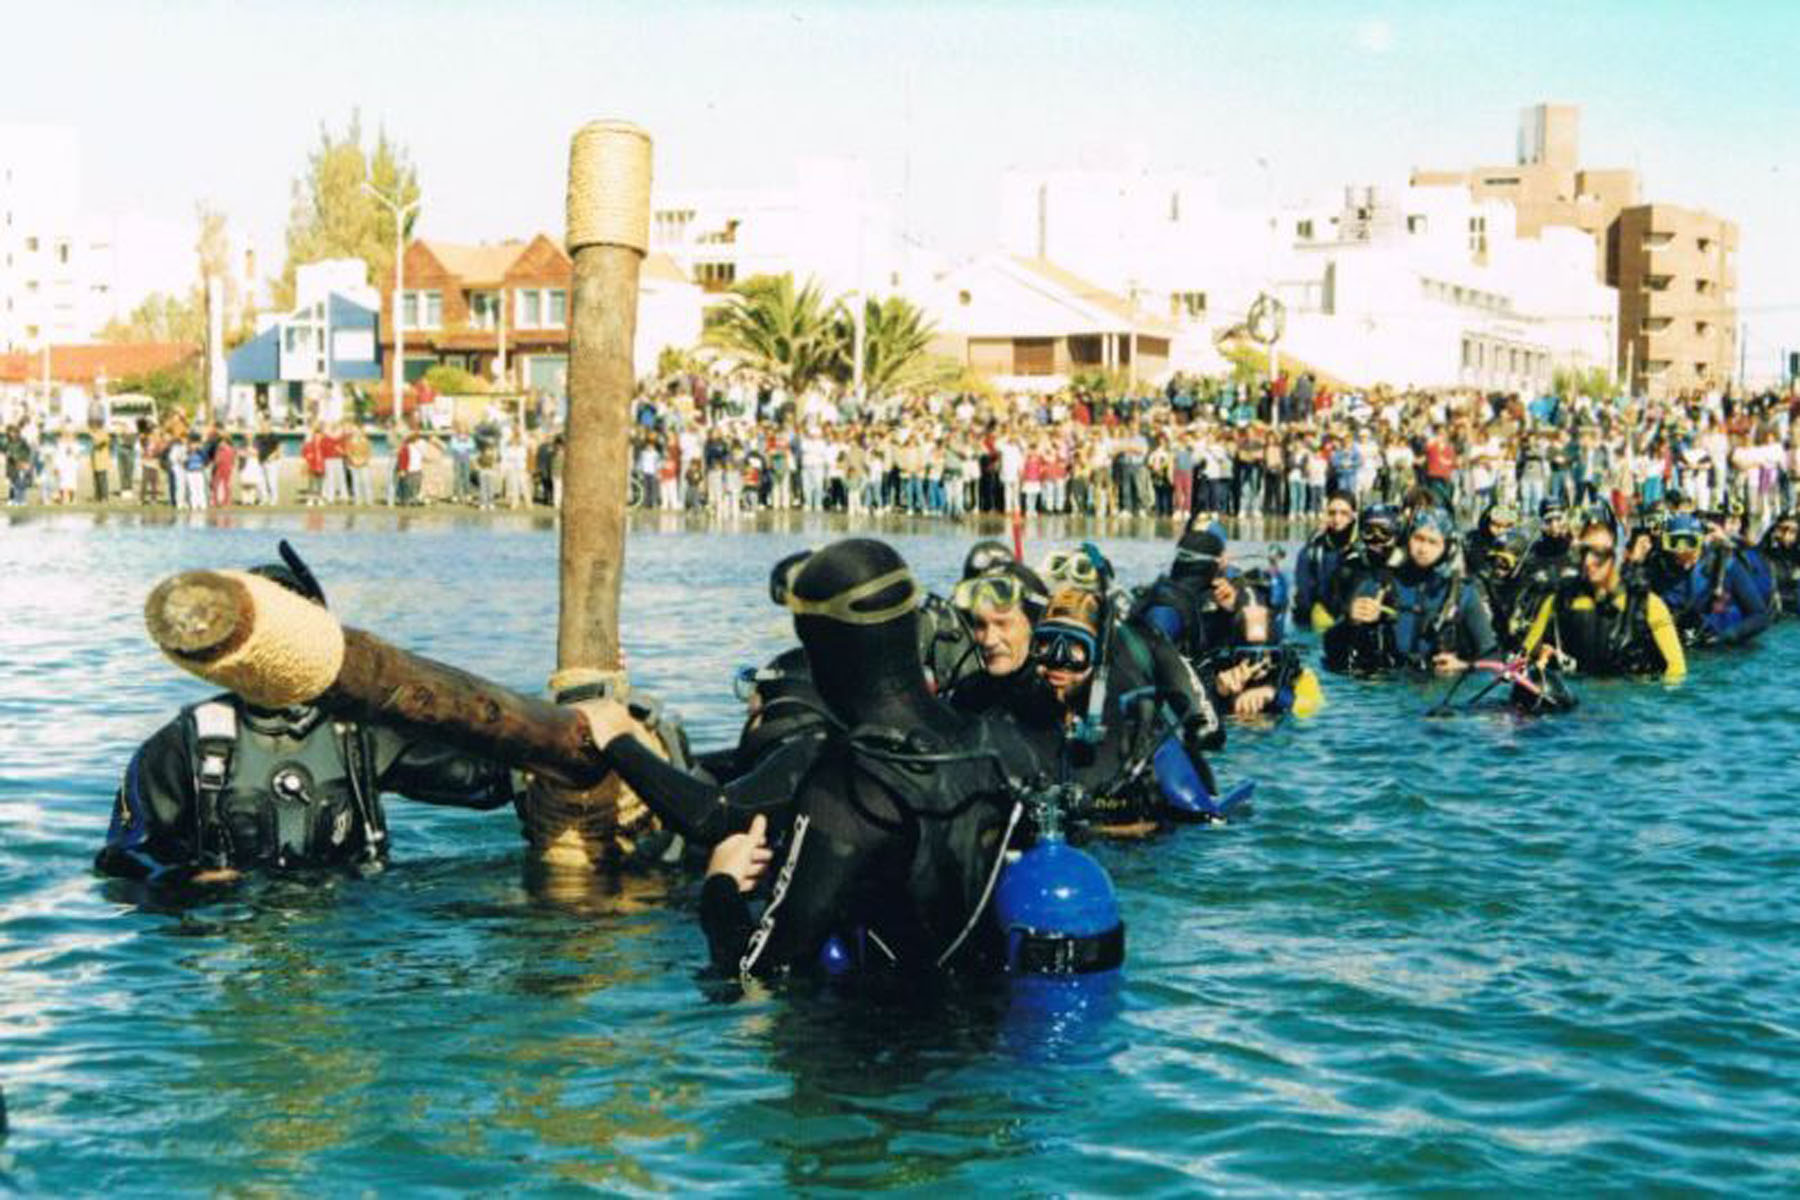 El primer Vía Crucis Submarino marcó un hito para el turismo que se realiza en Puerto Madryn. Desde entonces la ceremonia se realiza cada año, en Semana Santa